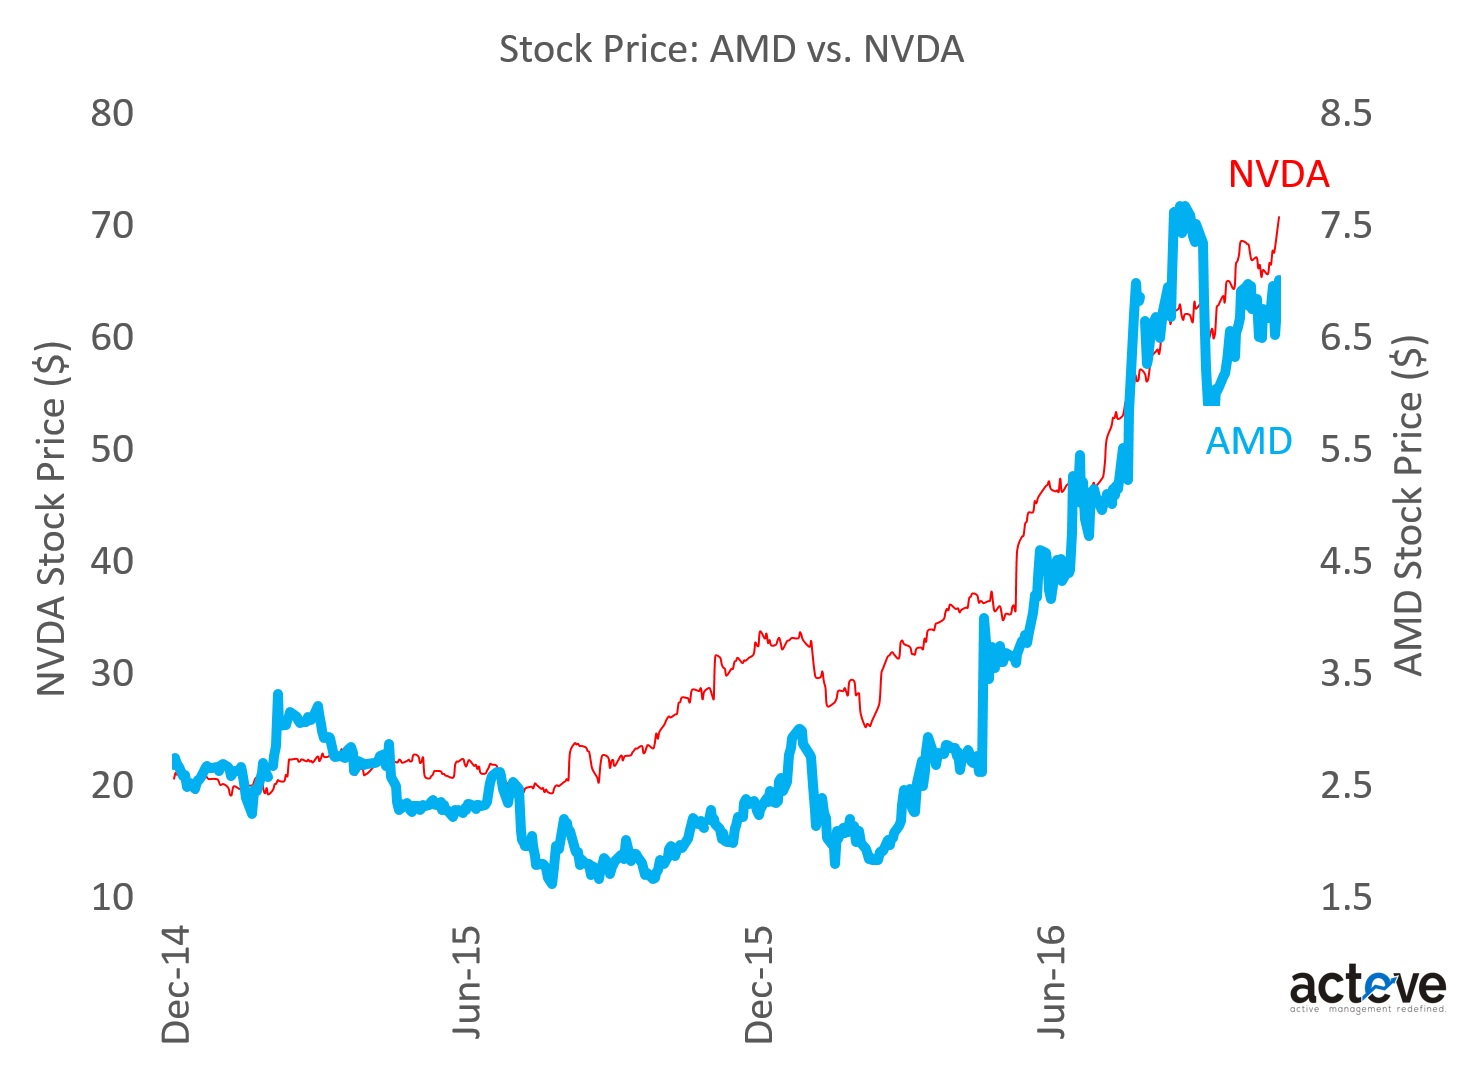 nvda stock split approved